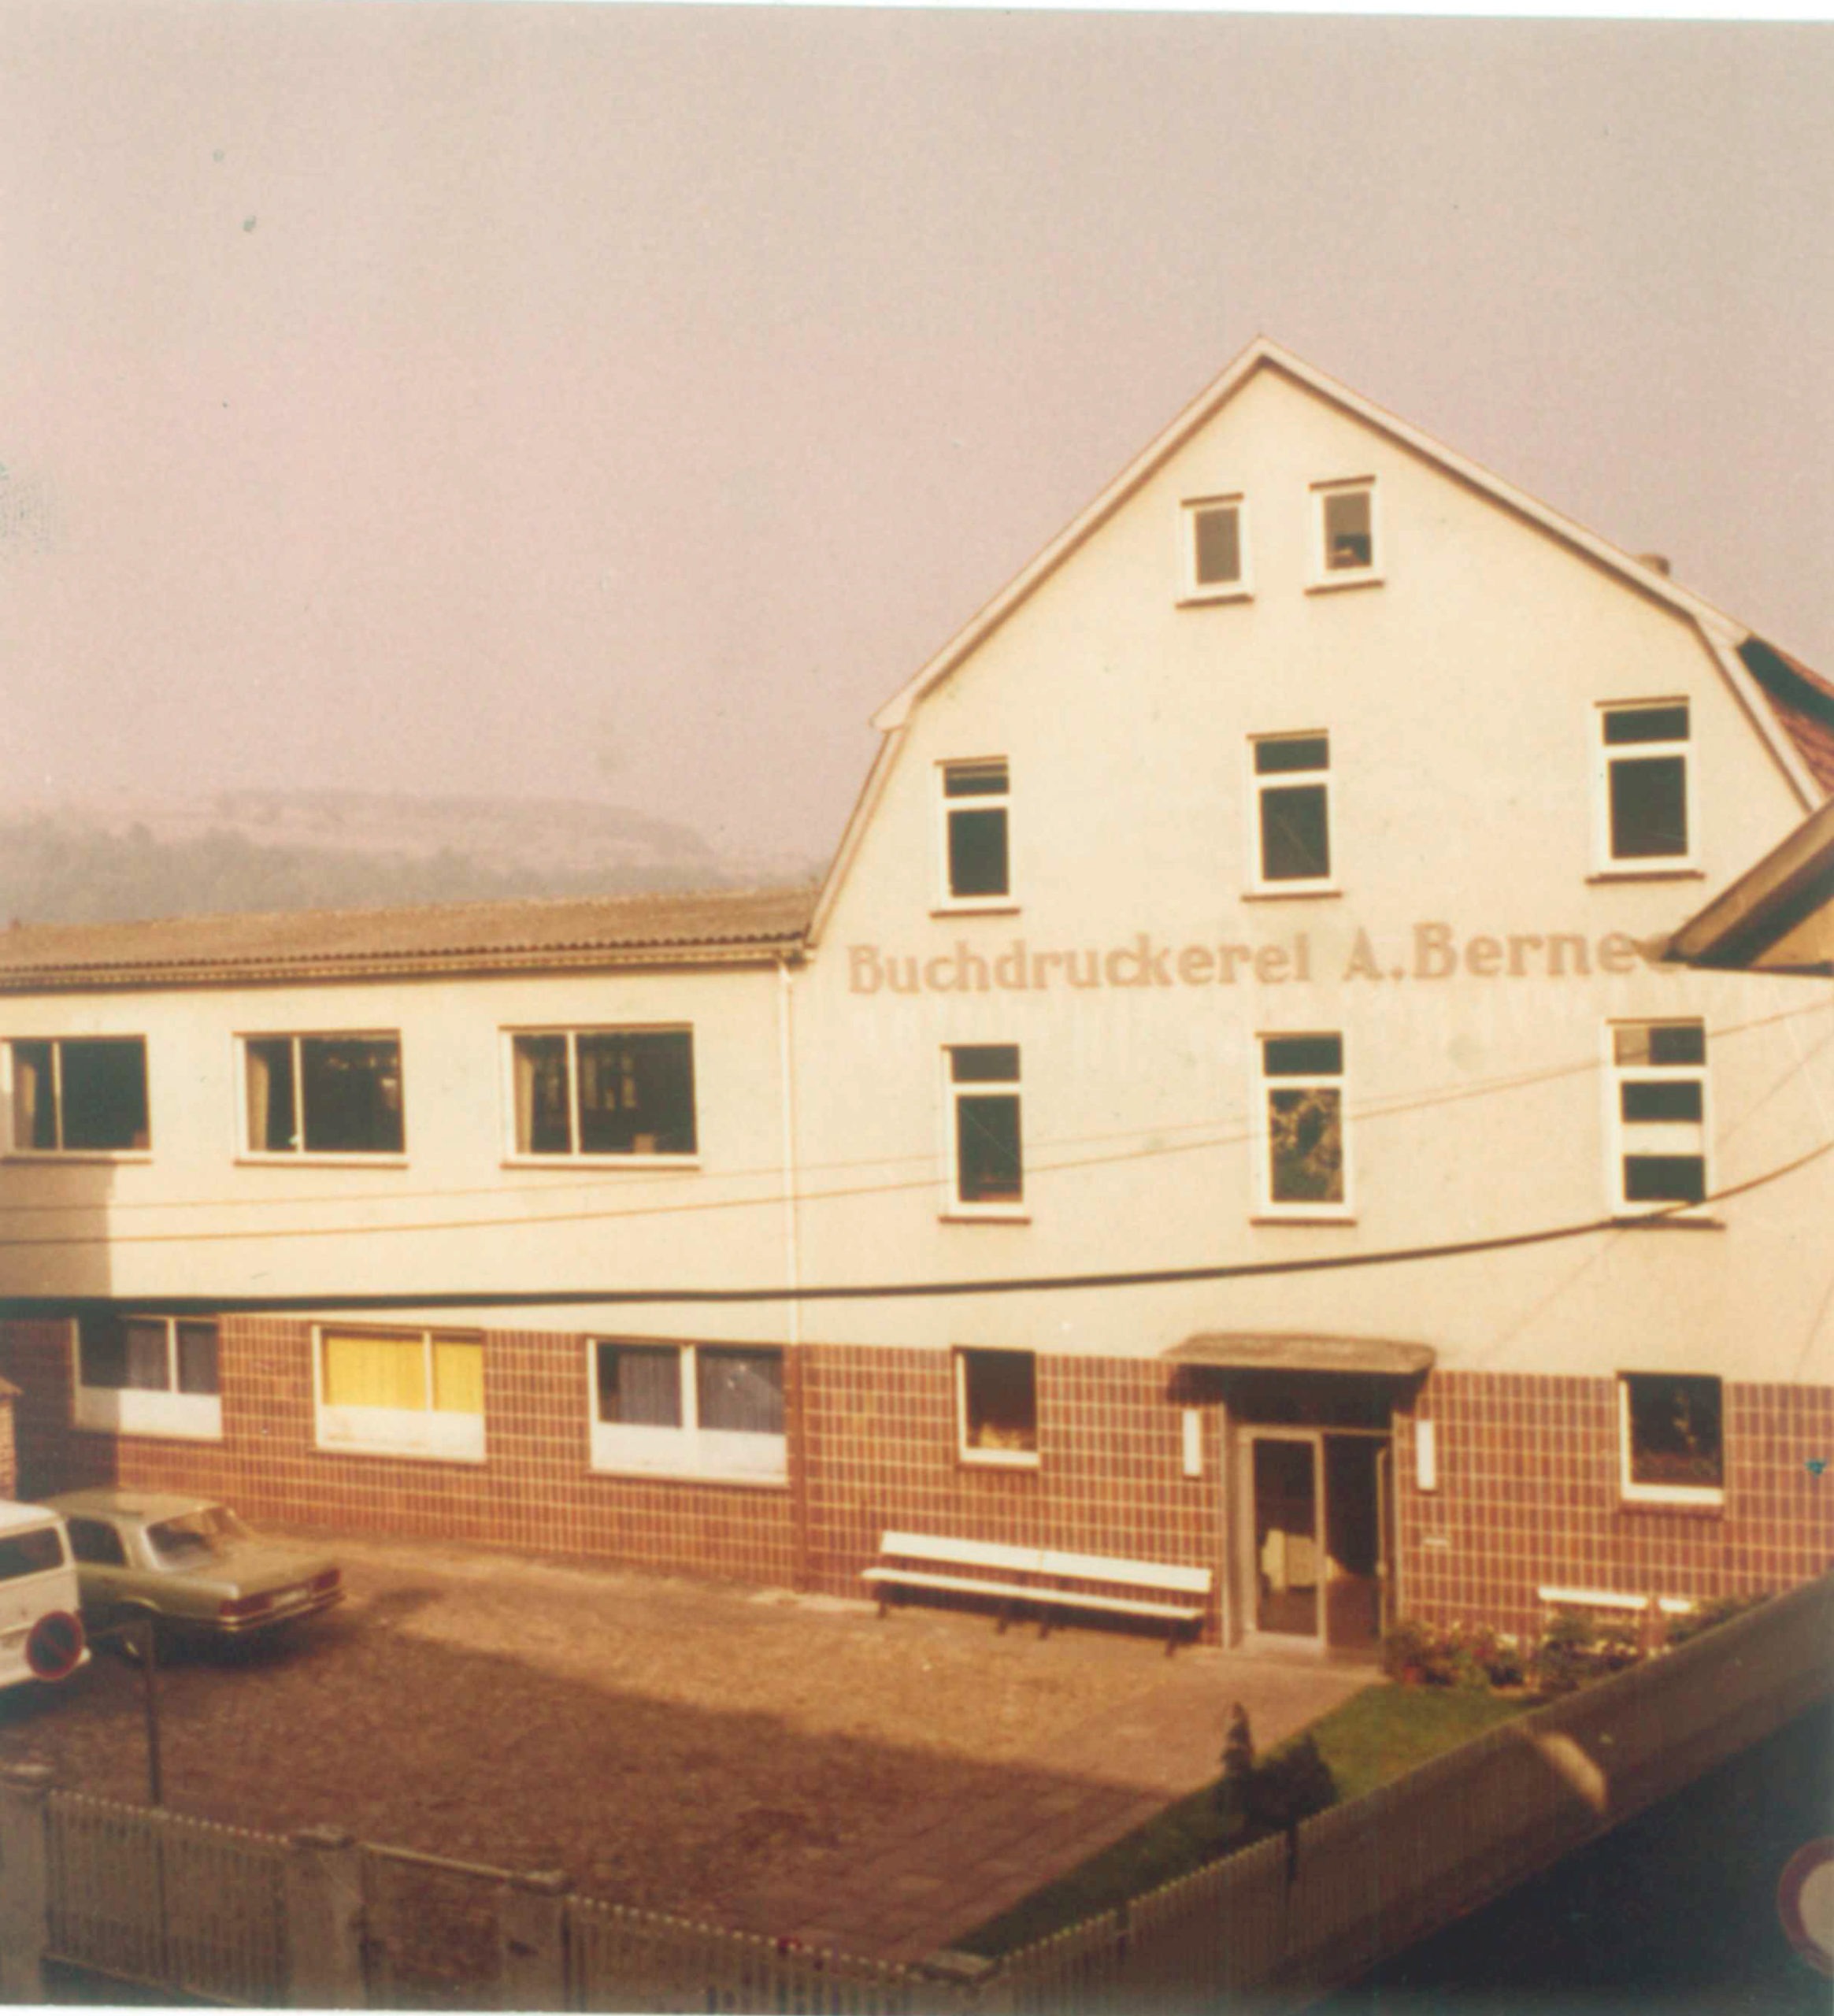 Buchdruckerei Bernecker in den 70er Jahren